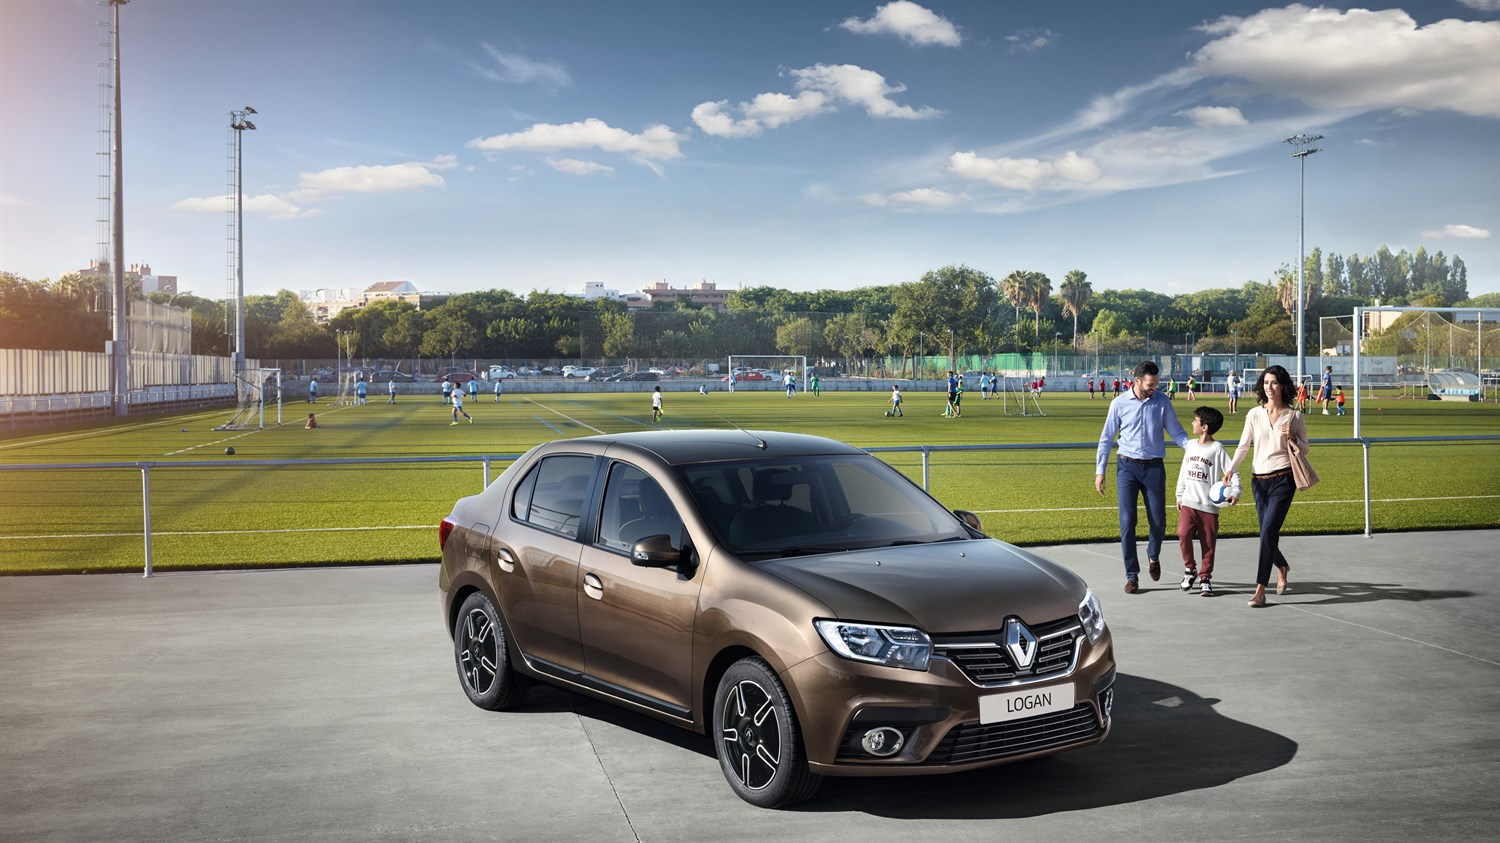 Renault LOGAN - famille rejoint la voiture devant un stade de foot